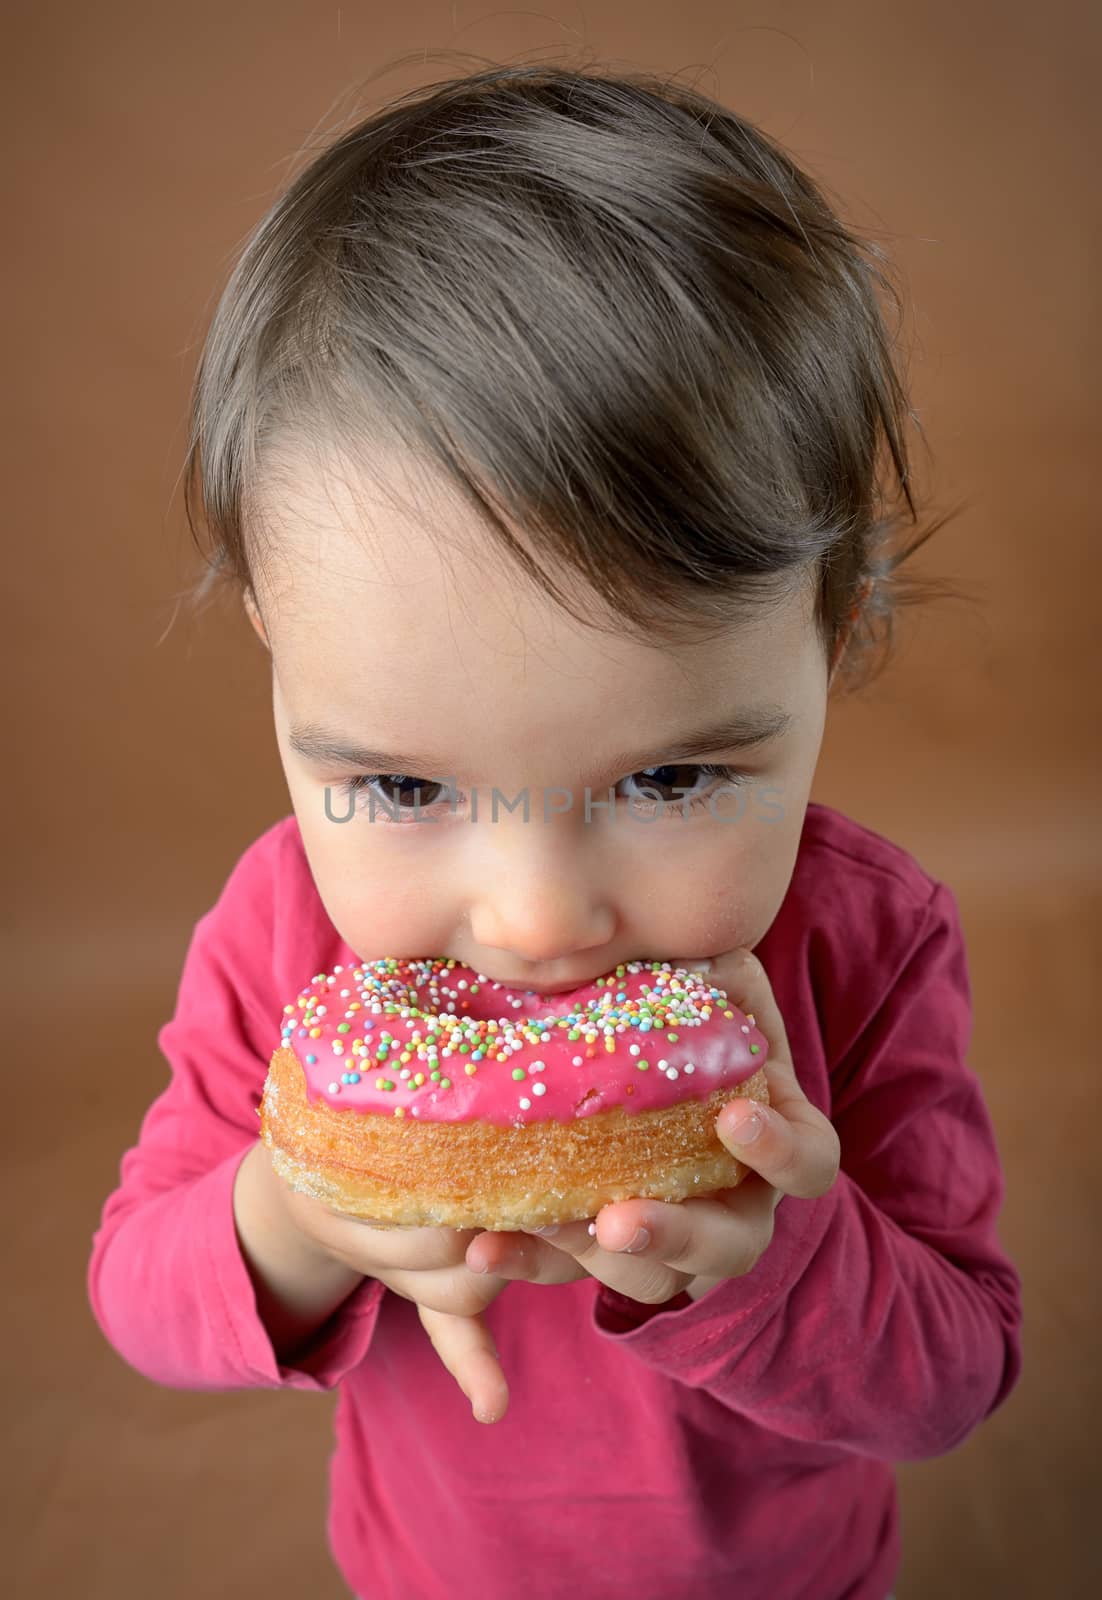 Little girl eating tasty donuts